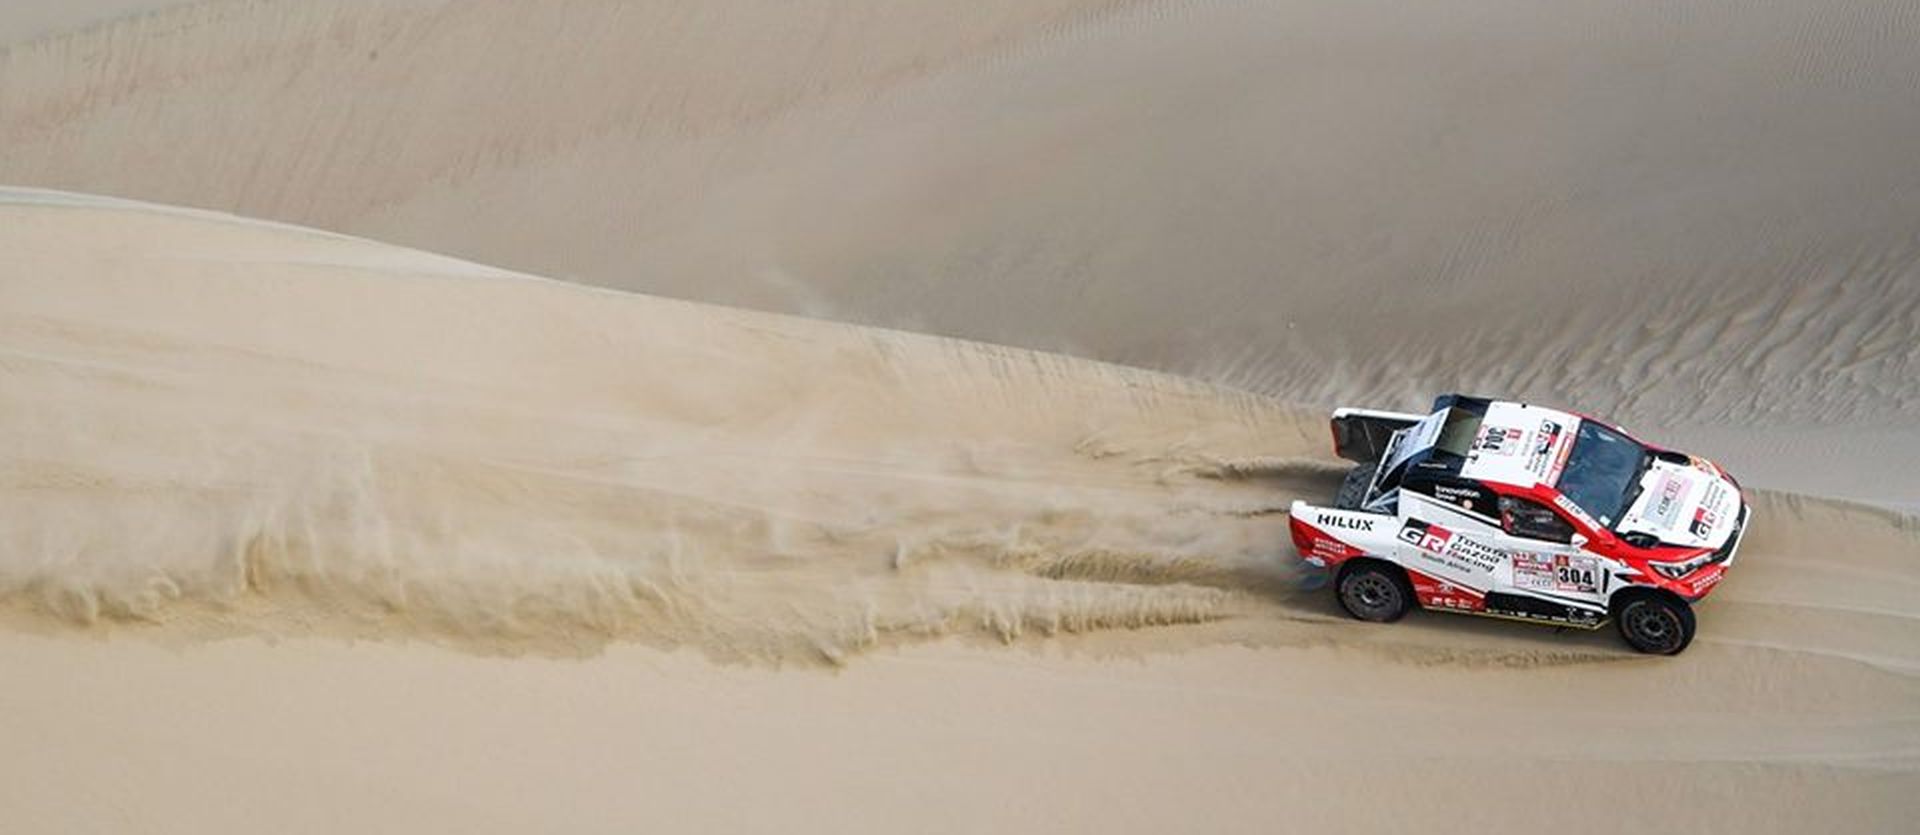 Dakar 2018 - bezdroża Peru wyeliminowały już 53 pojazdy